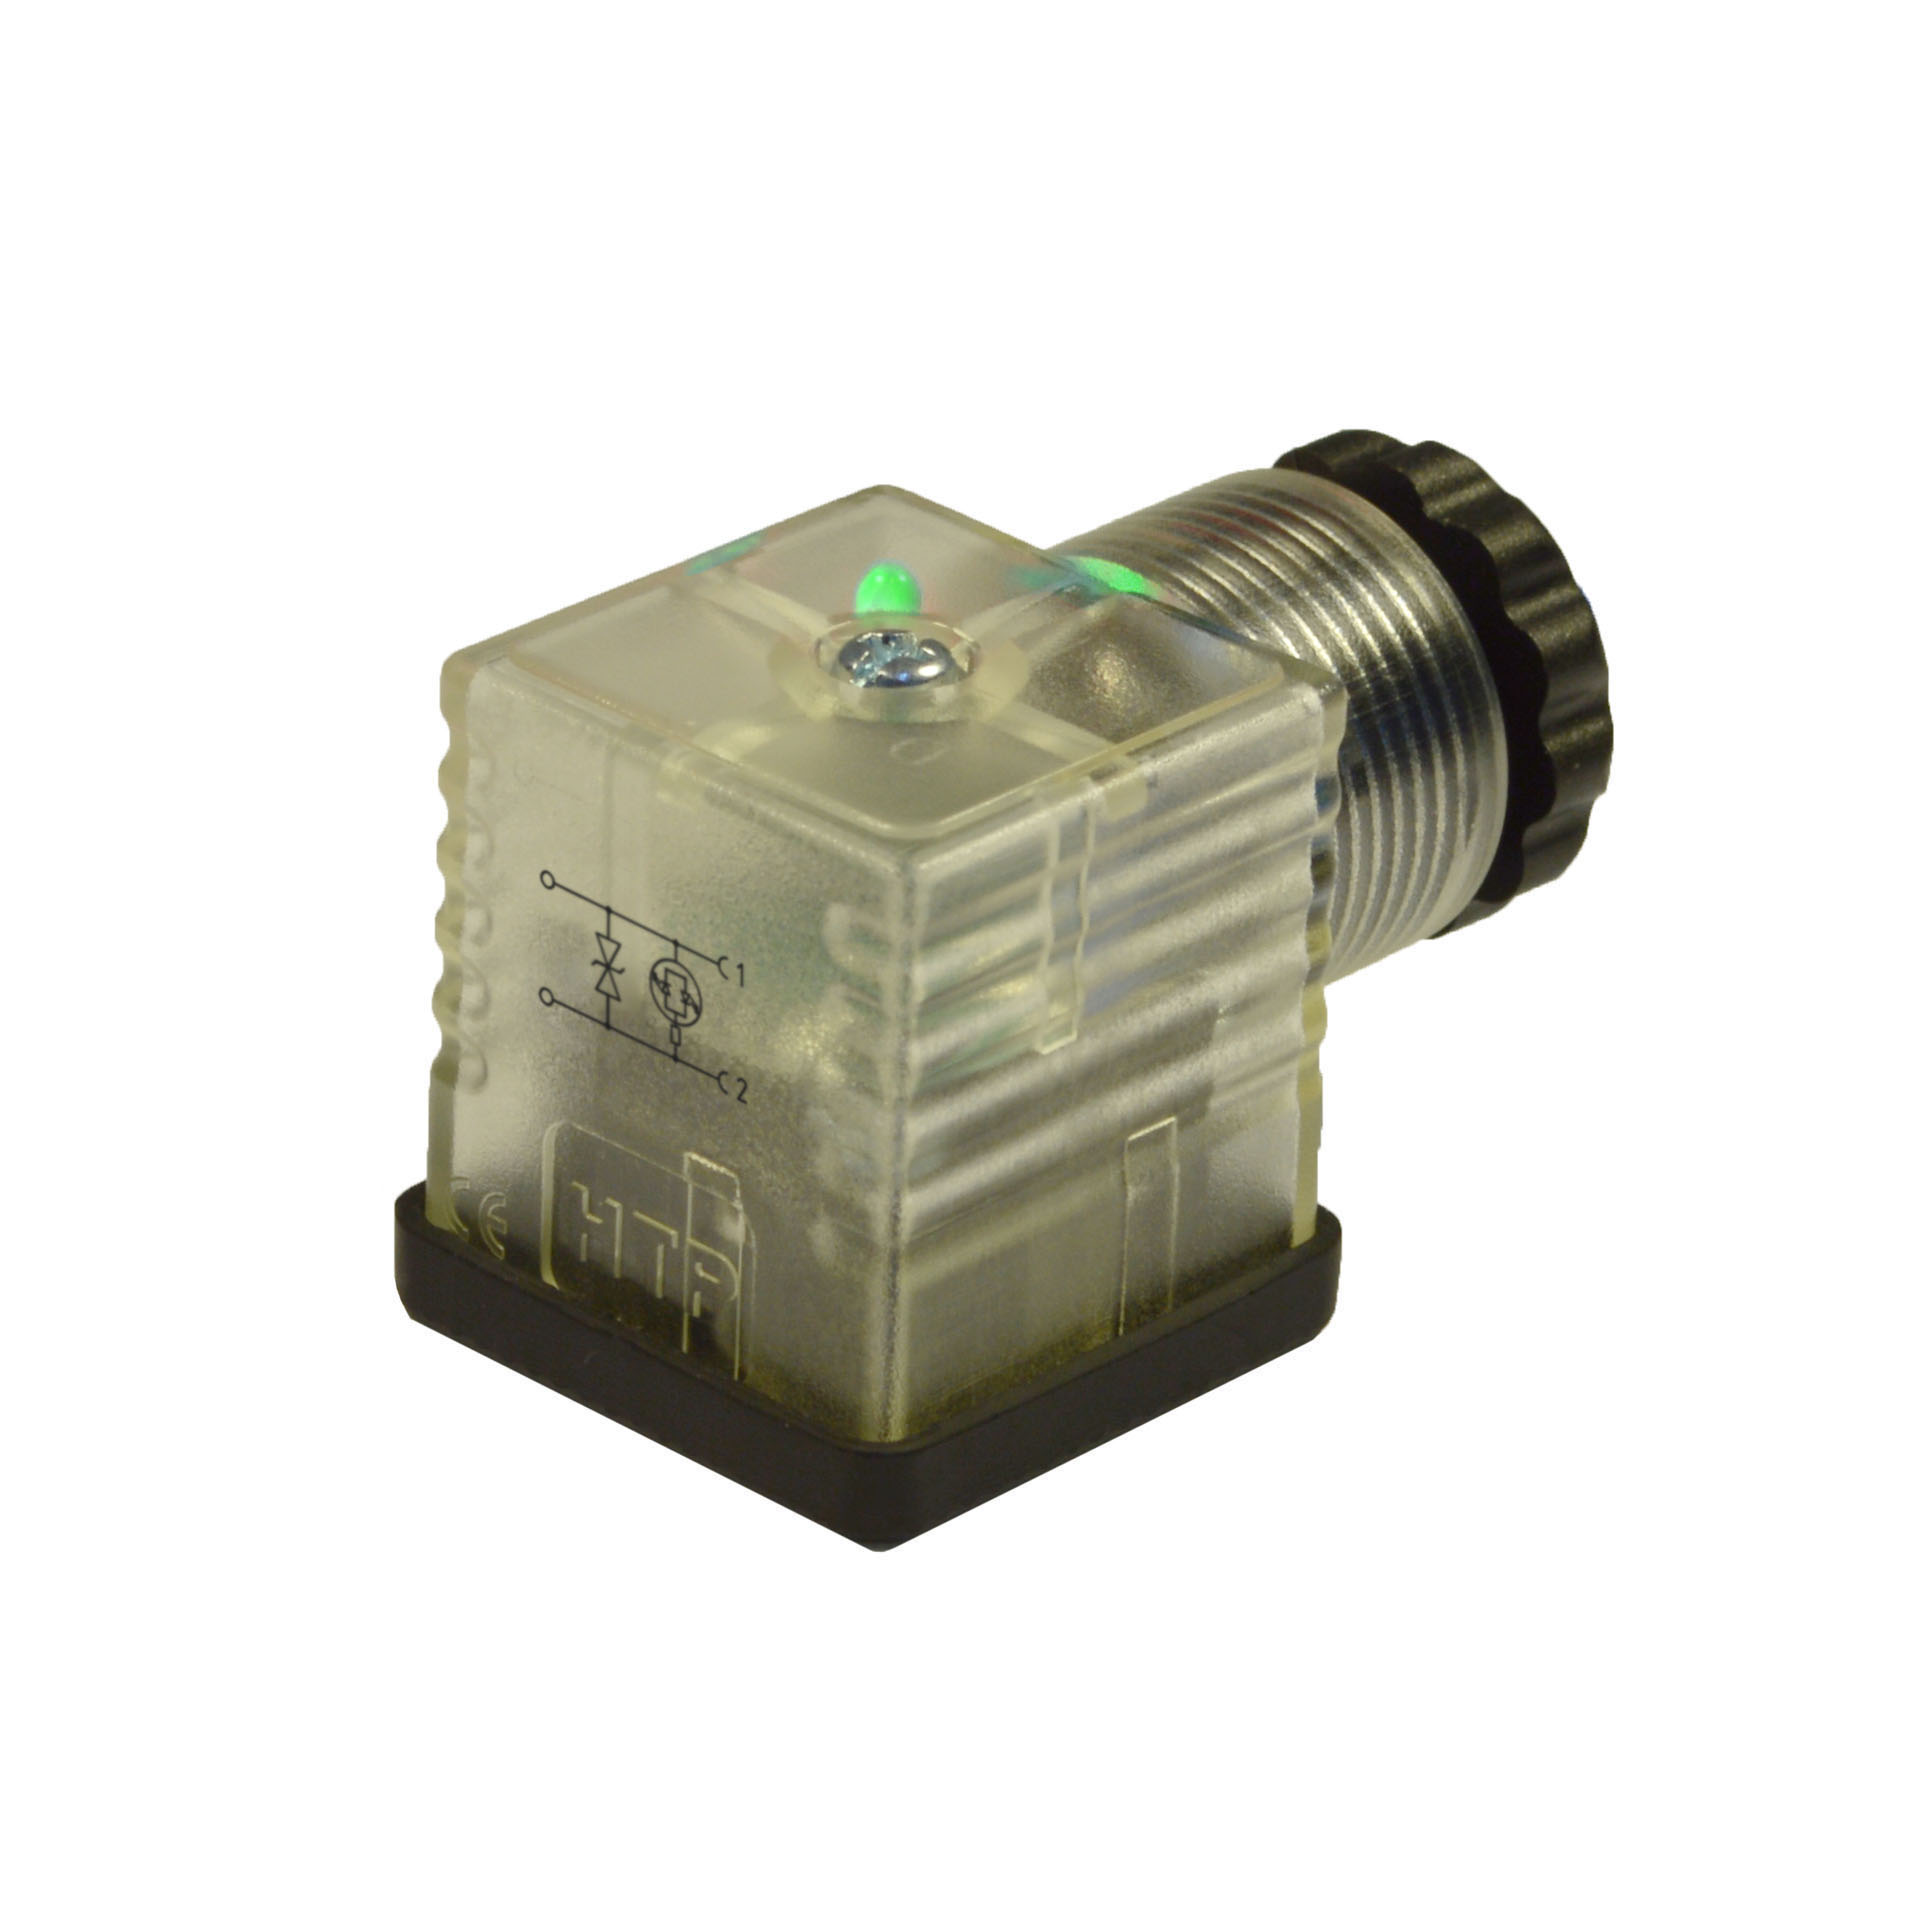 EN175301-803/A a cablare,2p+PE(h.12),LED verde+transil,24VAC/DC,PG9/11unif.